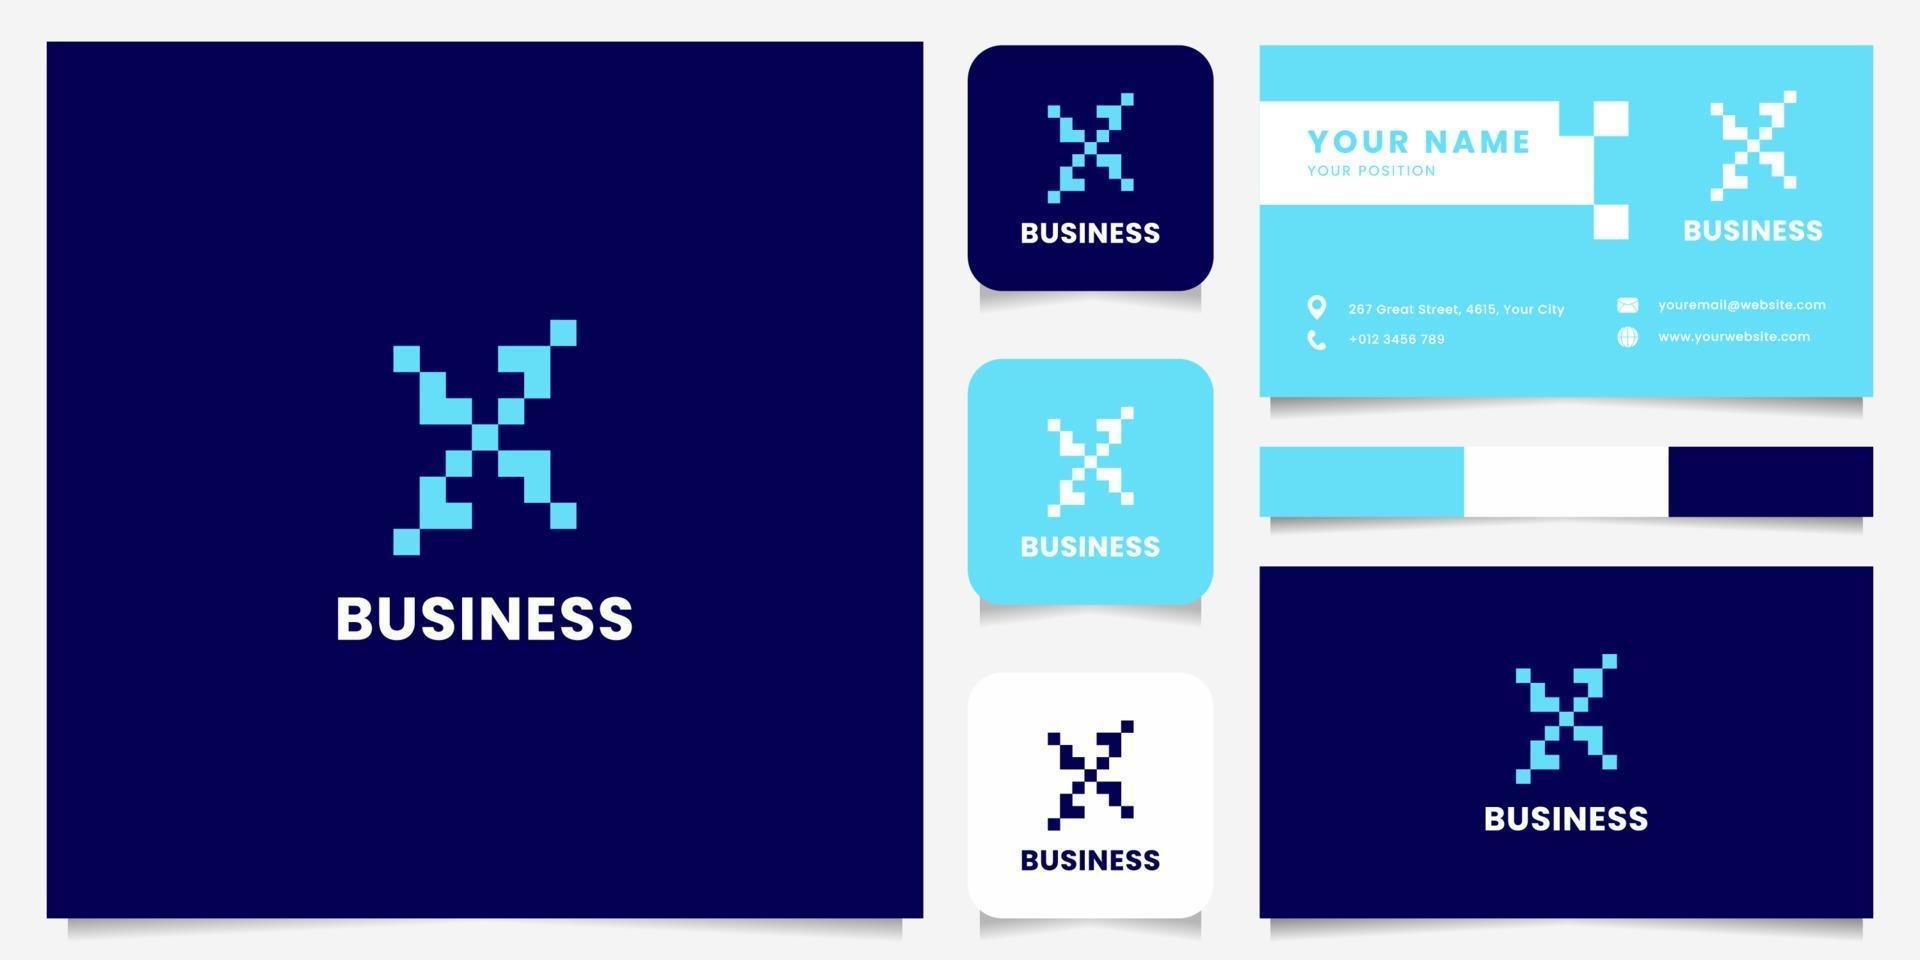 eenvoudig en minimalistisch blauw pixel letter x-logo met sjabloon voor visitekaartjes vector